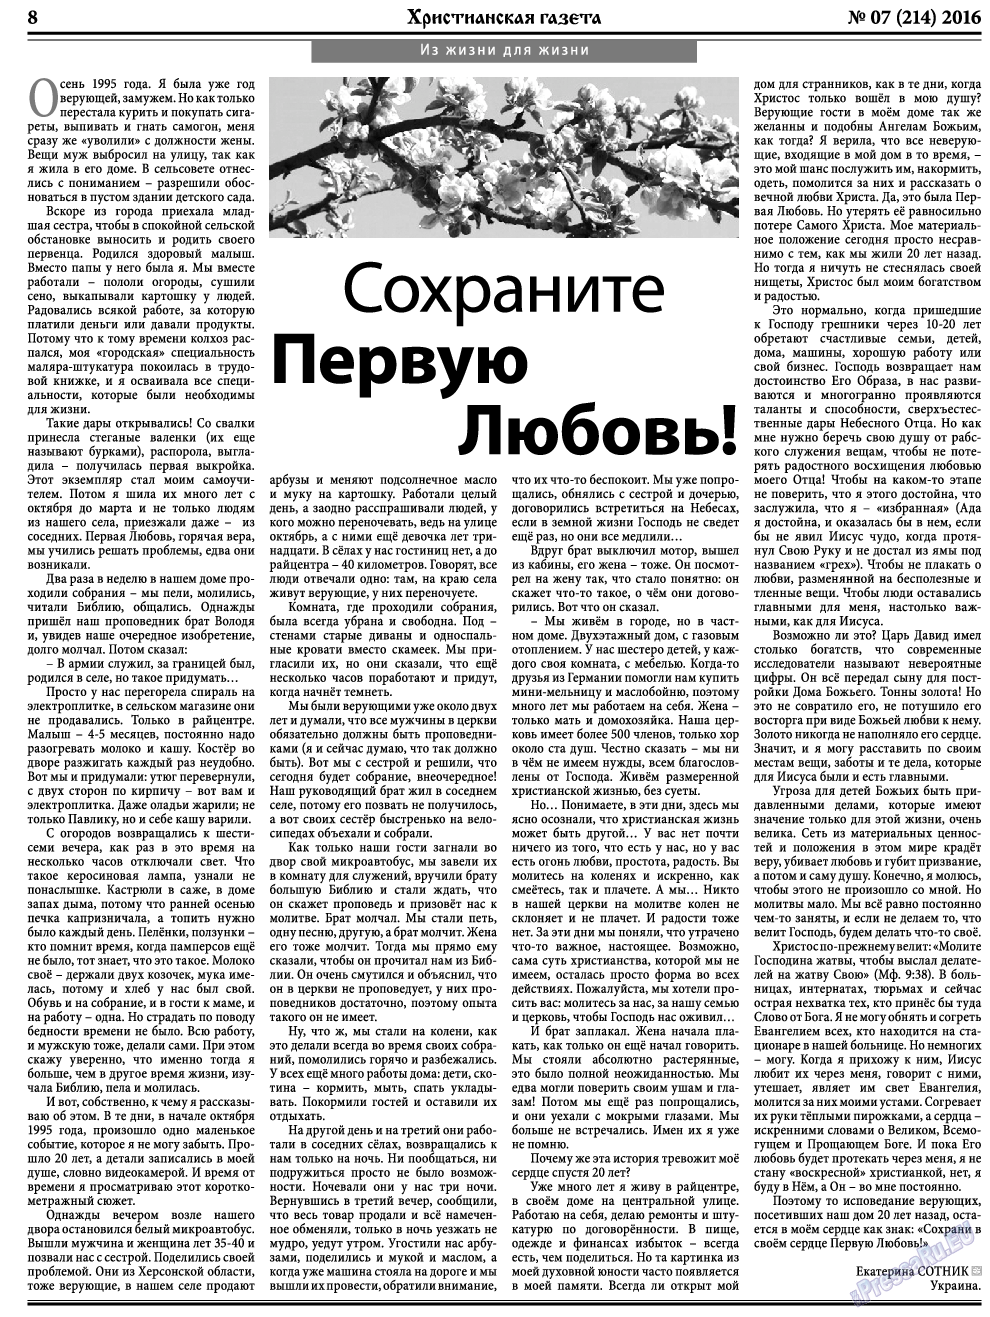 Христианская газета, газета. 2016 №7 стр.8